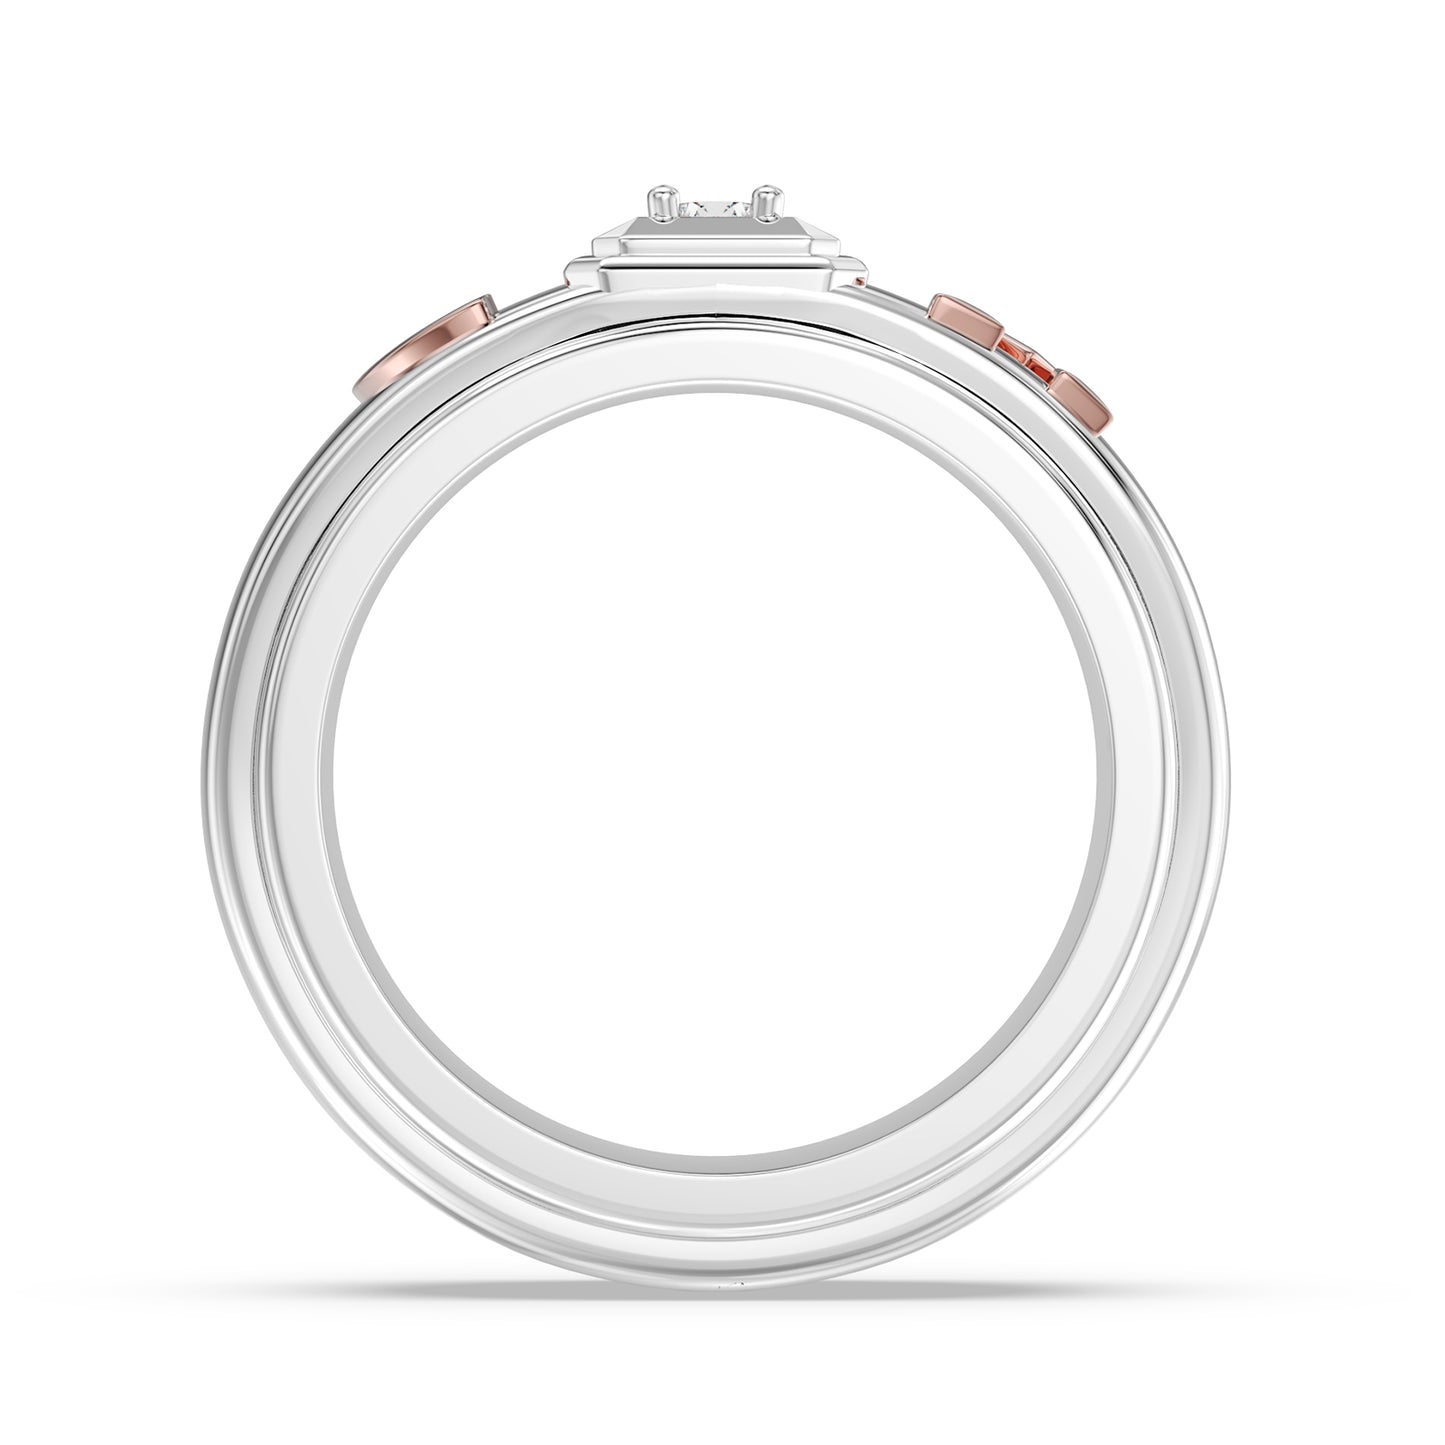 Monosparkle Affinity 3D Couple Rings